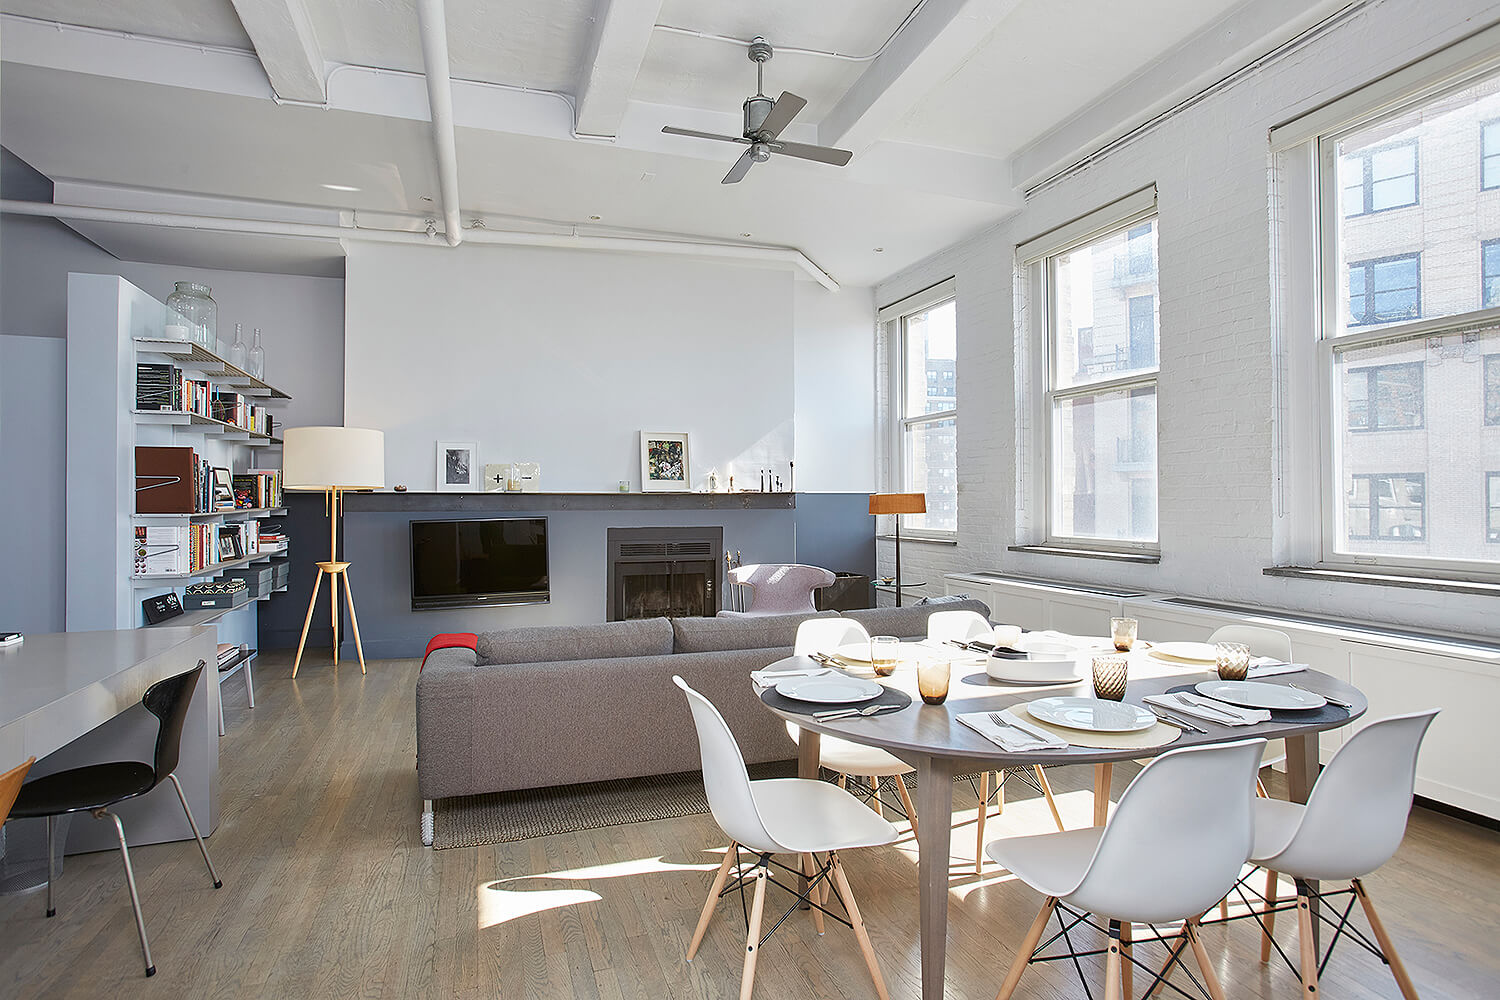 Апартаменты Алана Рикмана в Нью-Йорке будут выставлены на продажу-Фото 2